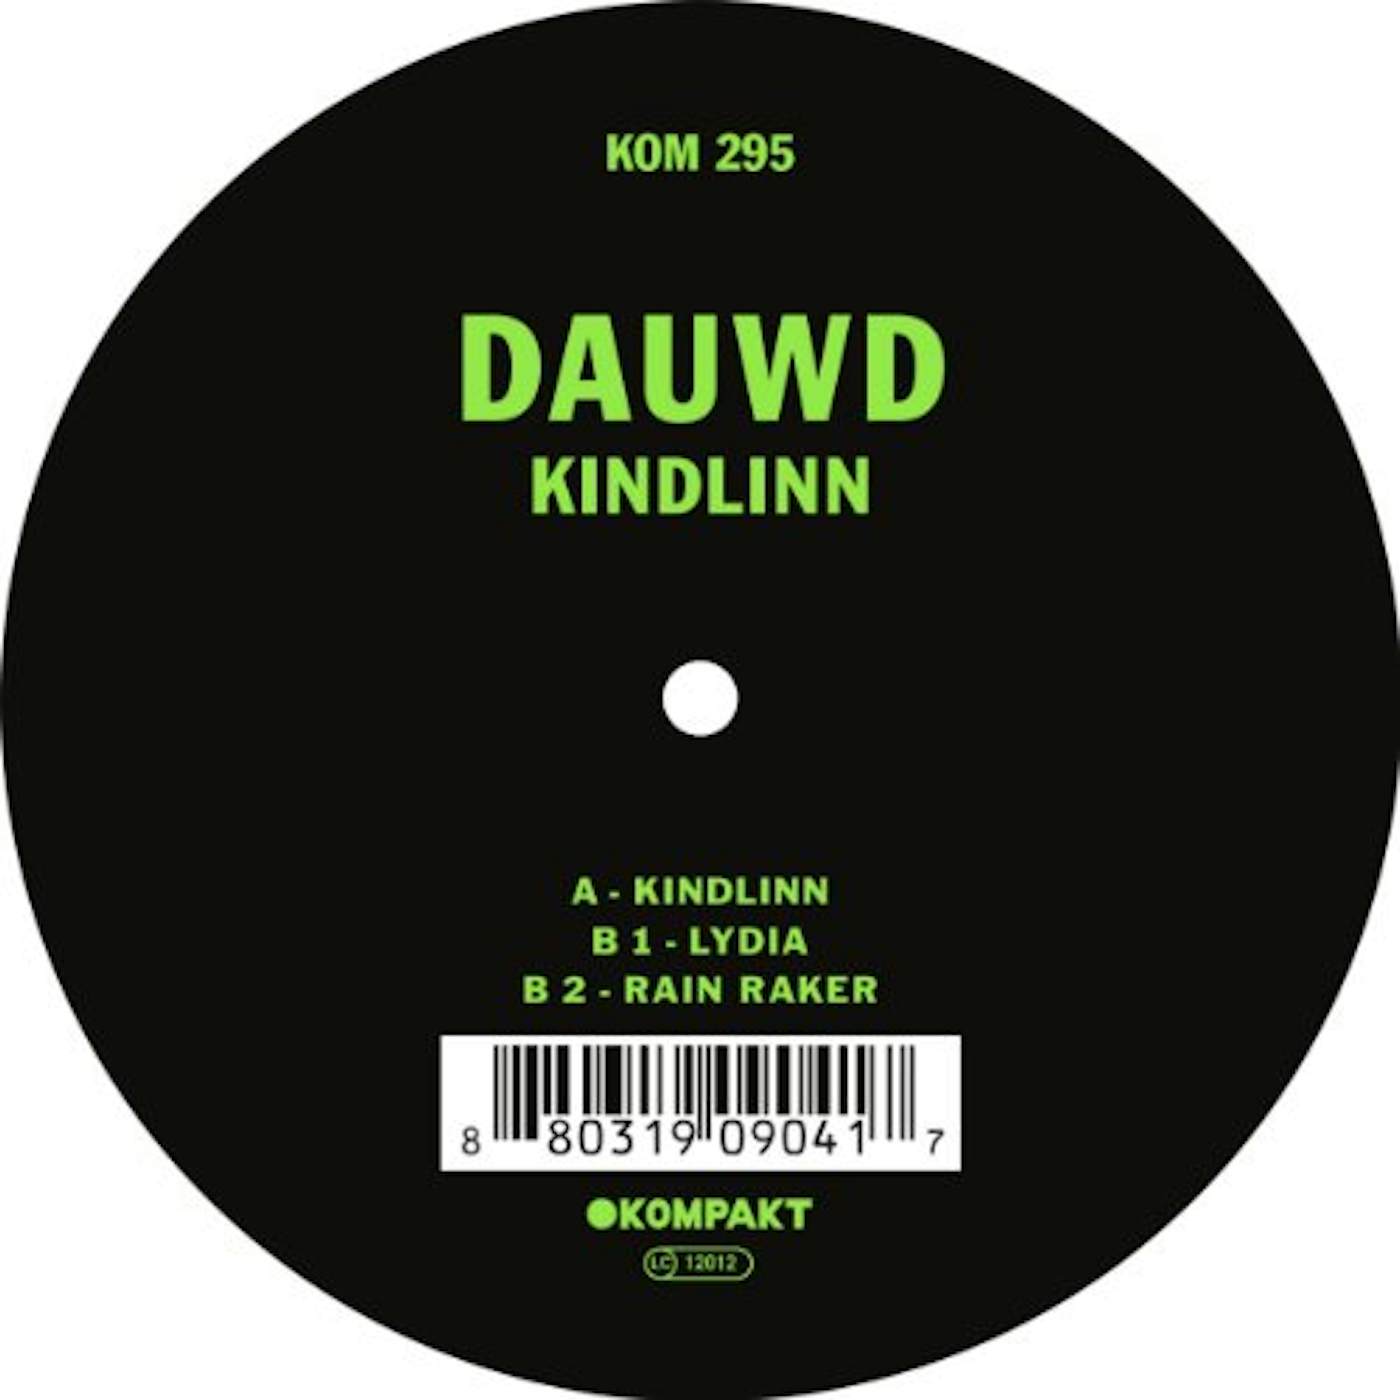 Dauwd Kindlinn Vinyl Record